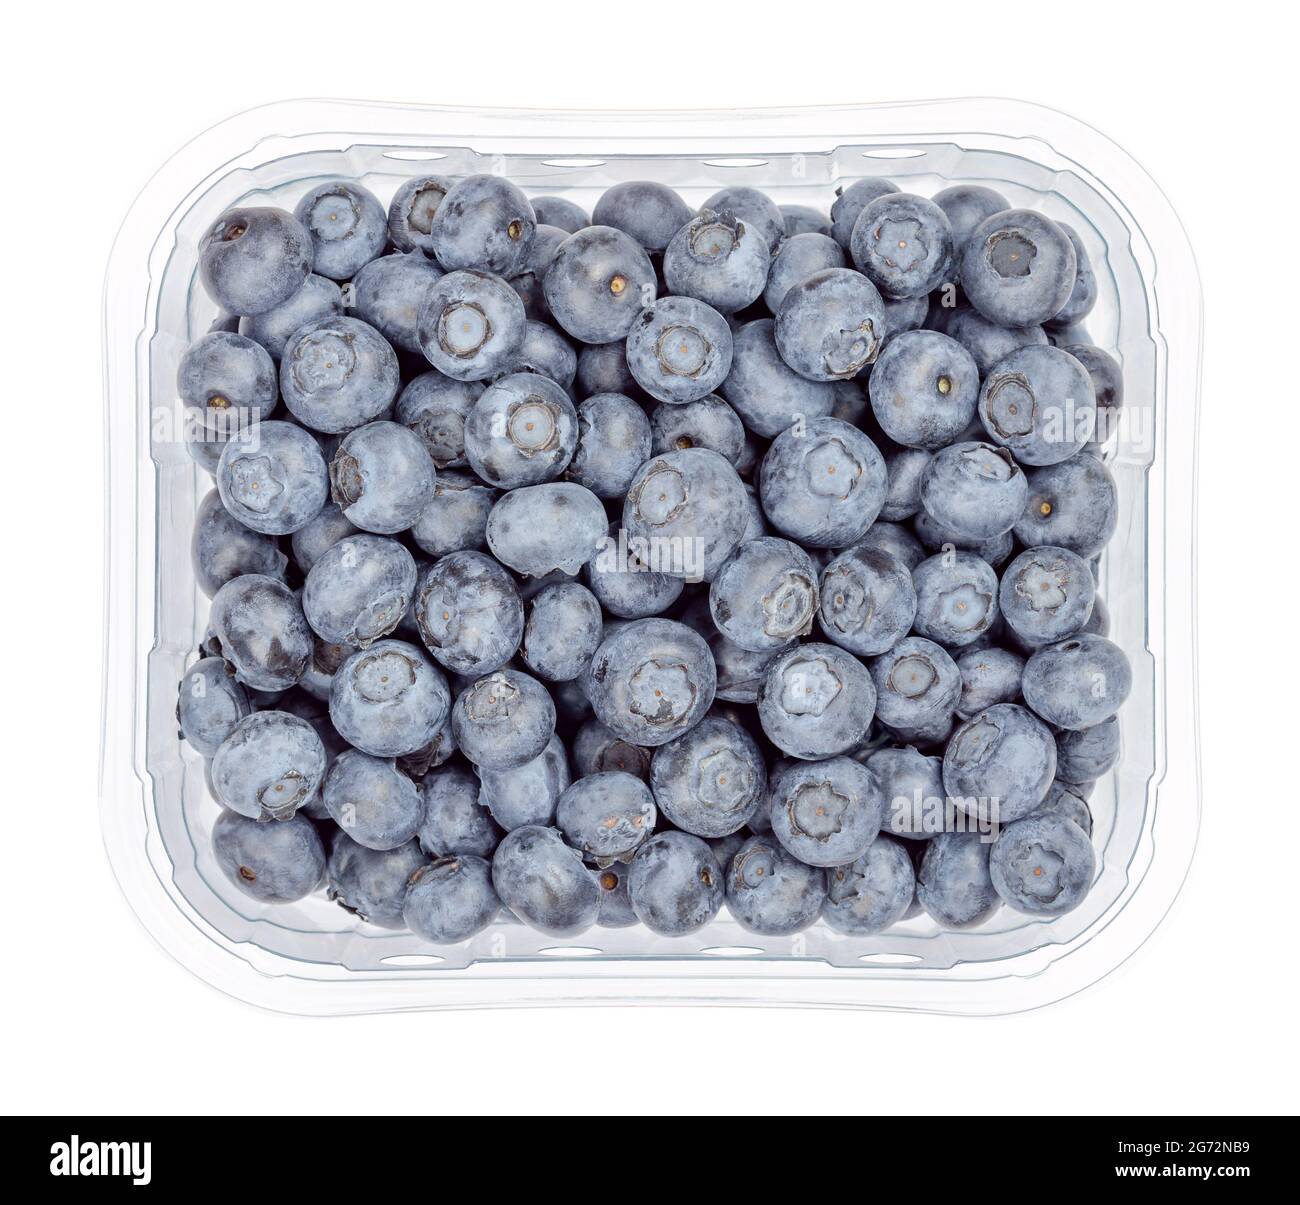 Bleuets frais dans un récipient en plastique transparent. Fruits crus mûrs de couleur bleu foncé de Vaccinium corymbosum, baies de bleuets de la haute-buisson du Nord. Banque D'Images